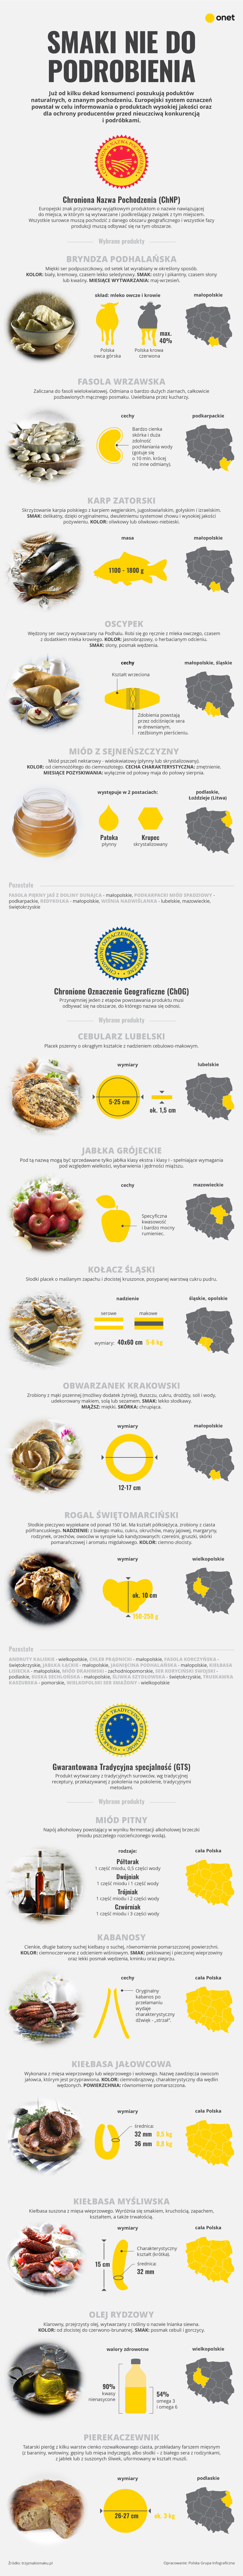 Polskie produkty regionalne